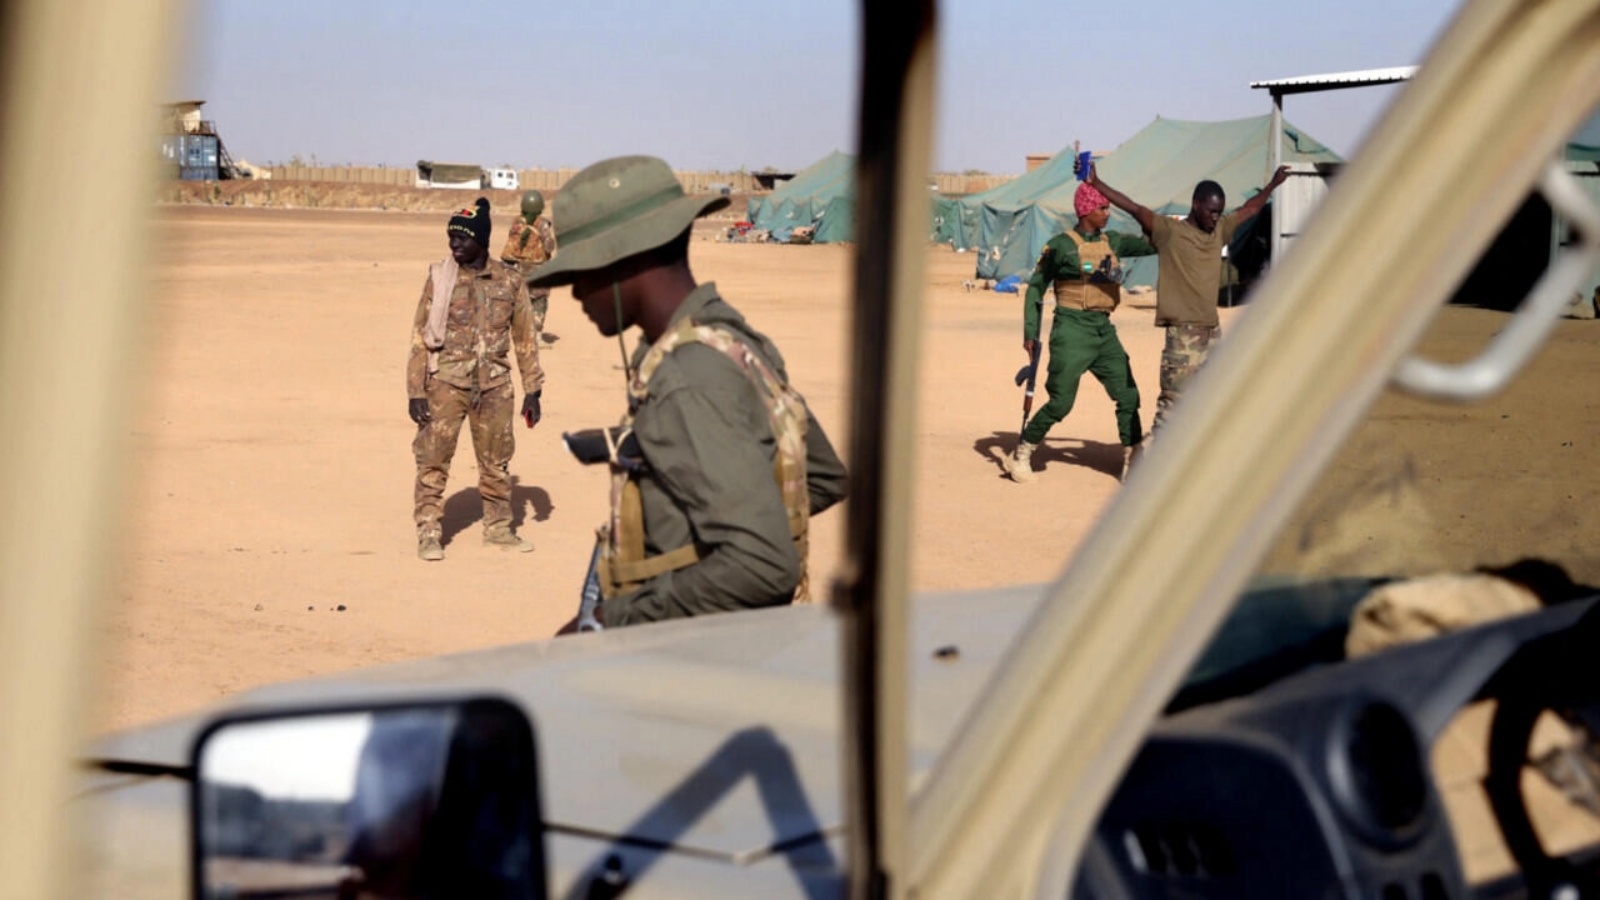 جنود ماليون من القوات المسلحة المالية يحضرون تدريبات مع قوات العمليات الخاصة الفرنسية ، في قاعدة ميناكا العسكرية في مالي، 7 ديسمبر 2021